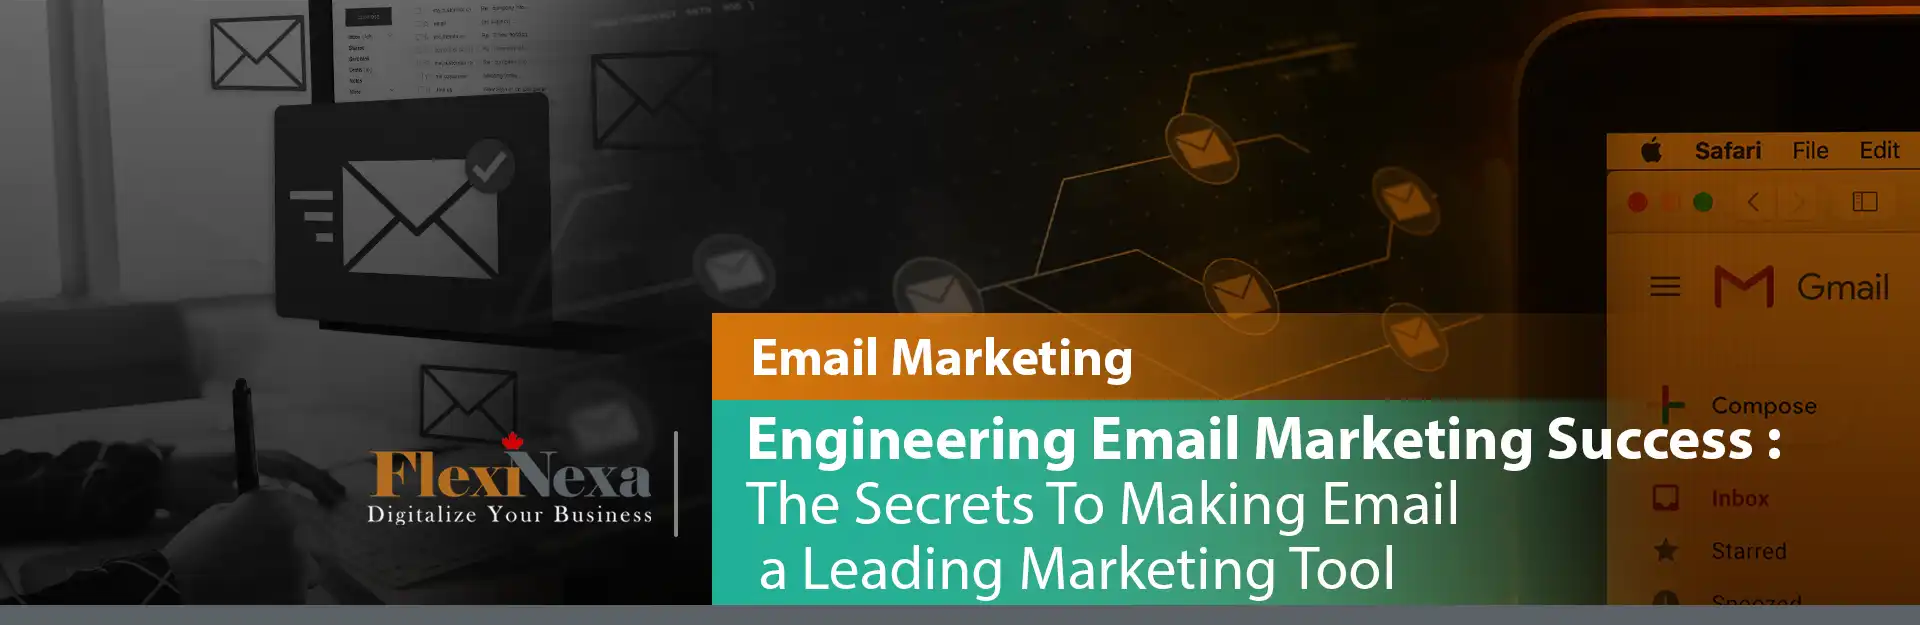 مهندسی موفقیت در ایمیل مارکتینگ: رازهایی برای تبدیل ایمیل به یک ابزار برتر بازاریابی